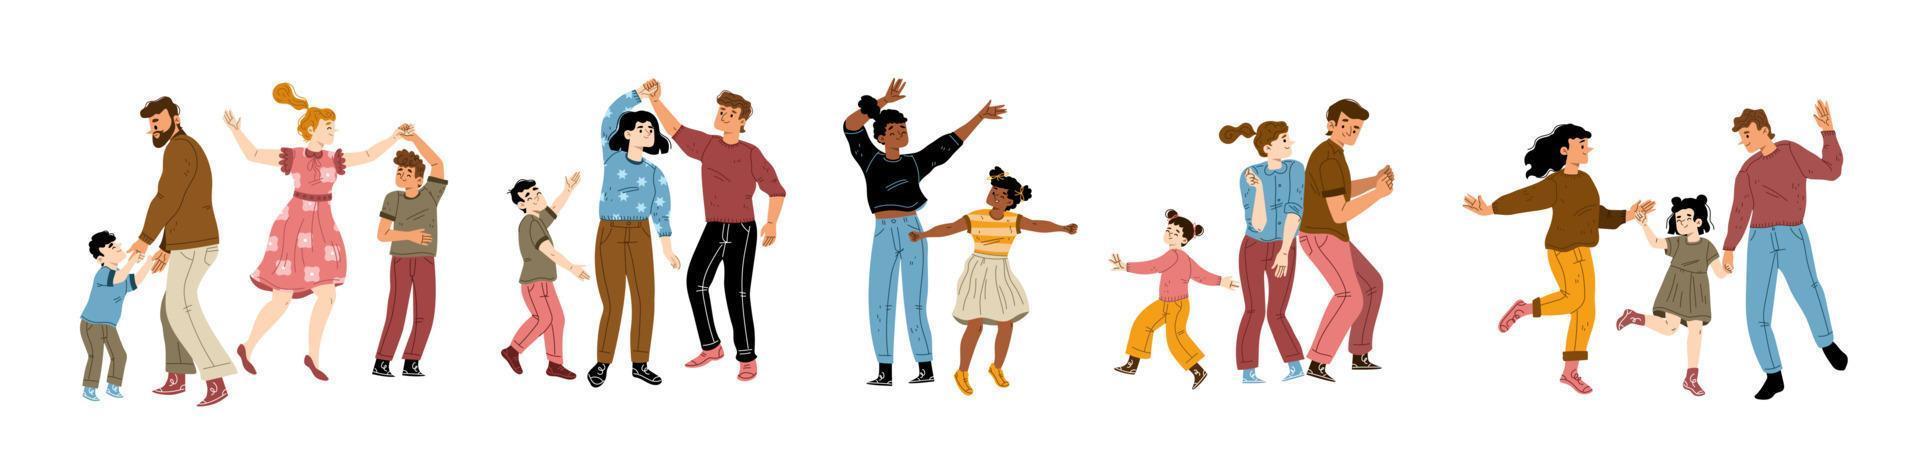 conjunto plano de padres bailando con niños vector